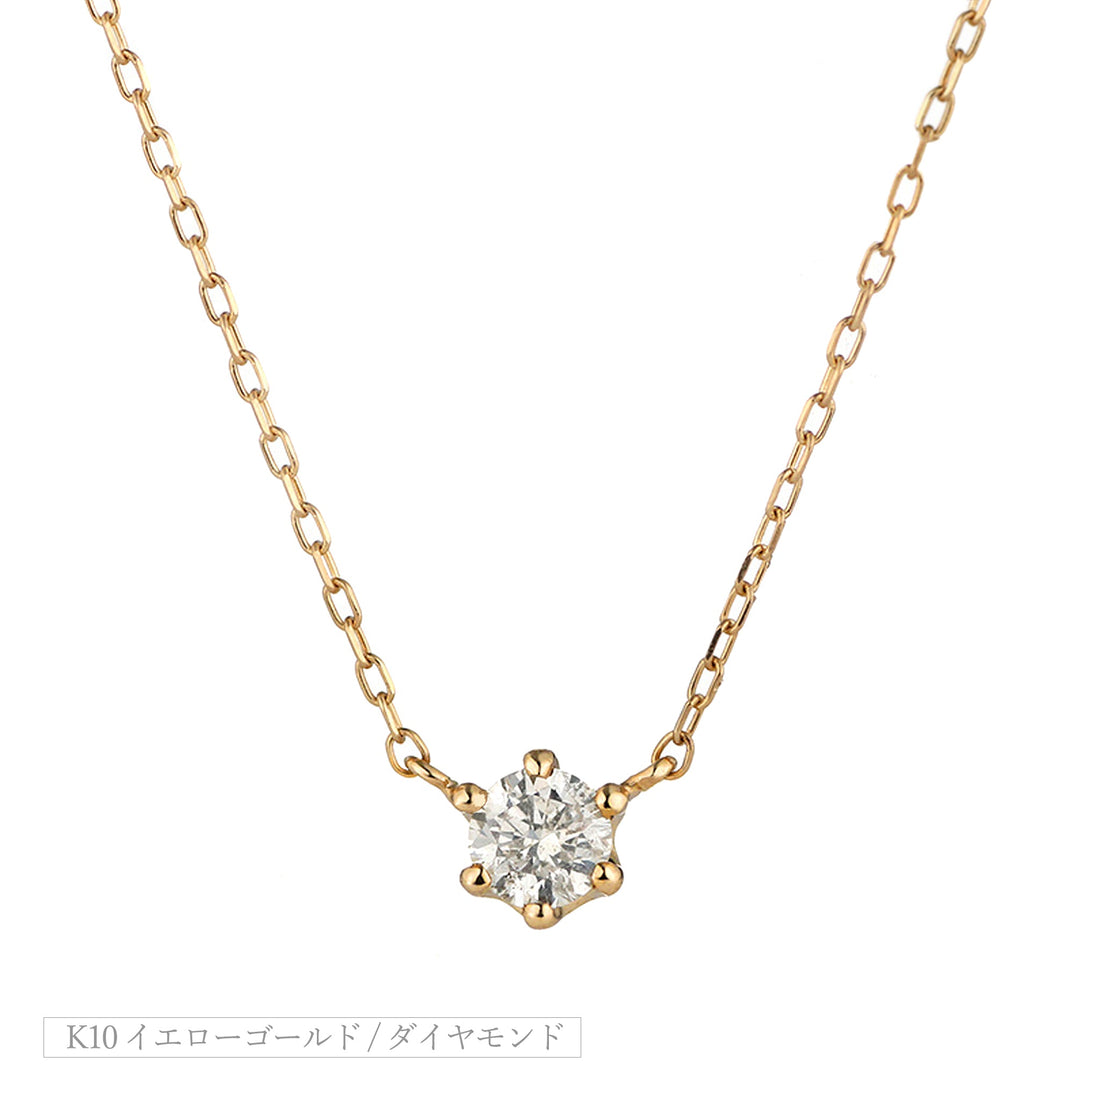 【キャンペーン中】K10 ダイヤモンド 0.13ct  ネックレス 0.83g美healSHOPダイヤモンド